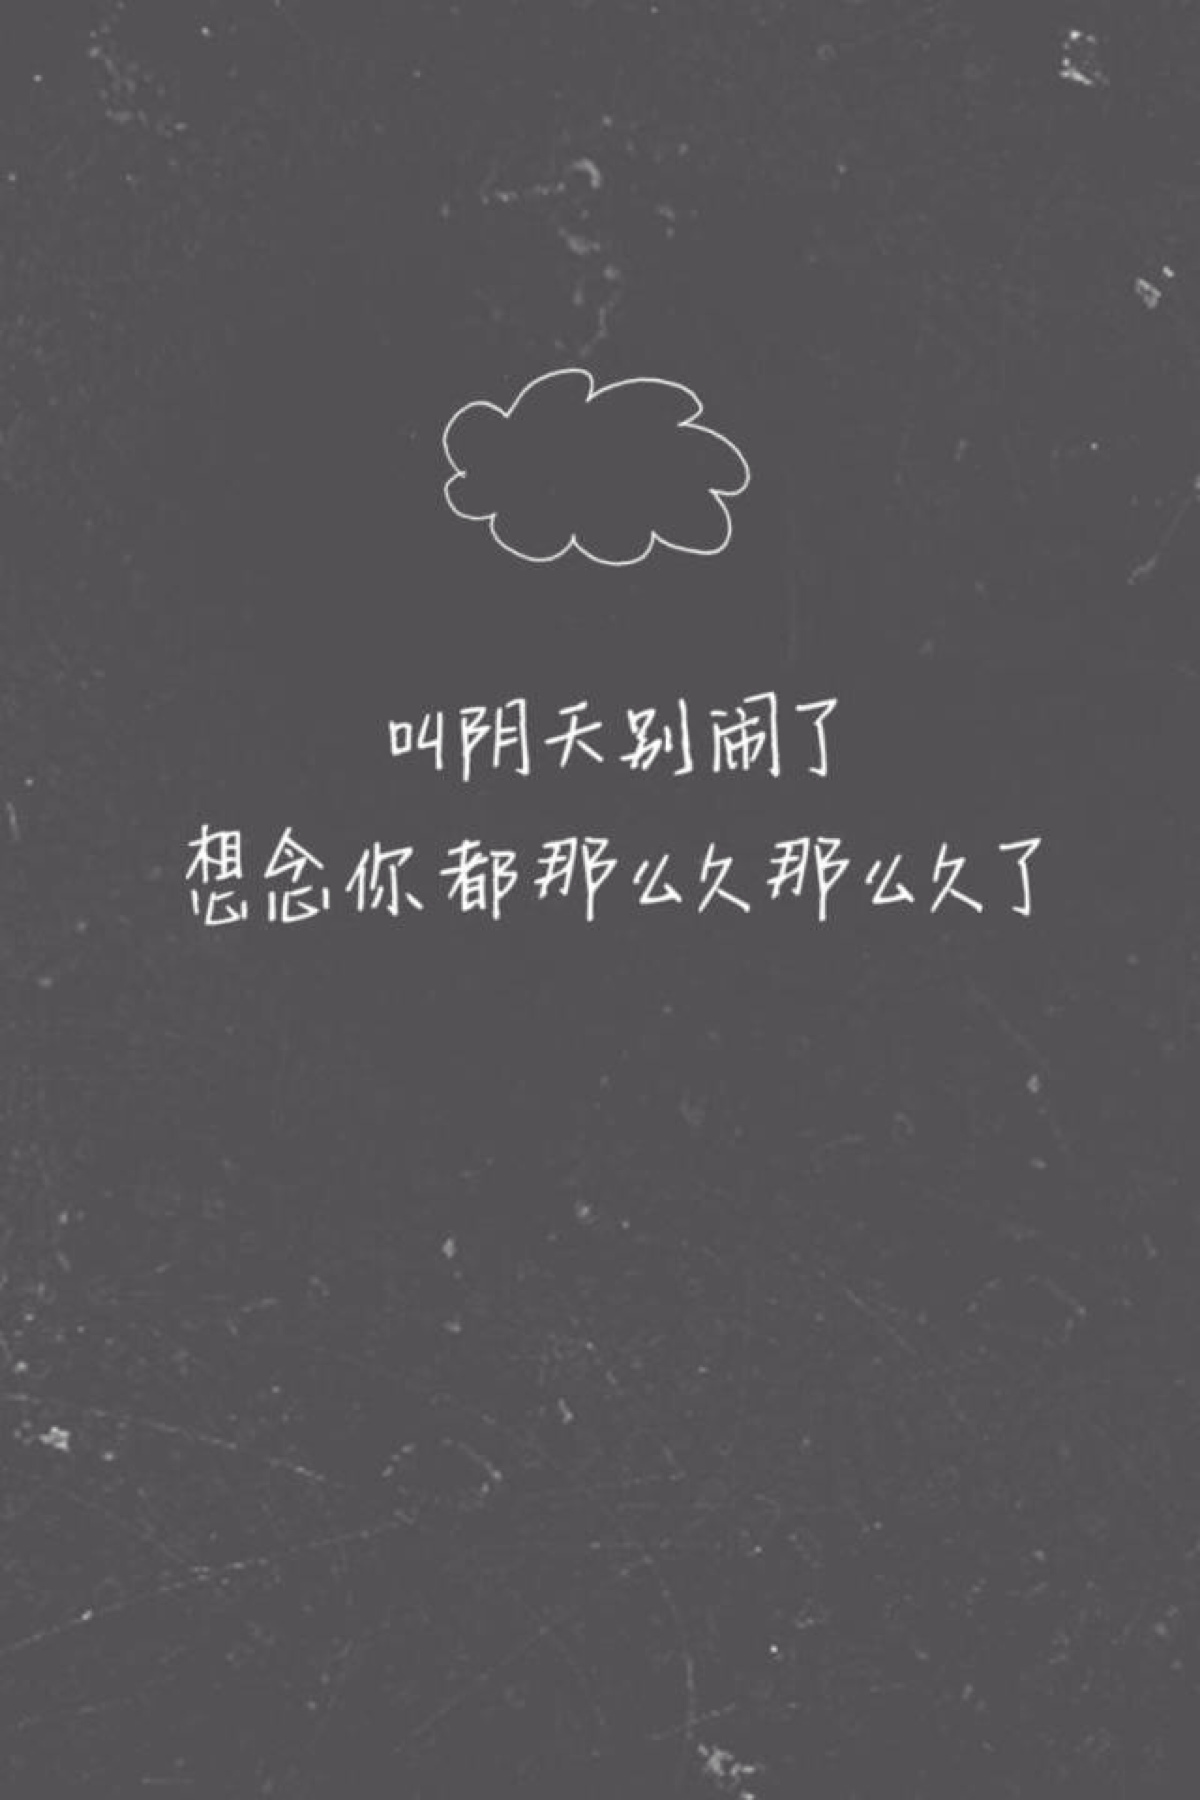 陈奕迅歌词文字壁纸 想念你都那么久那么久了